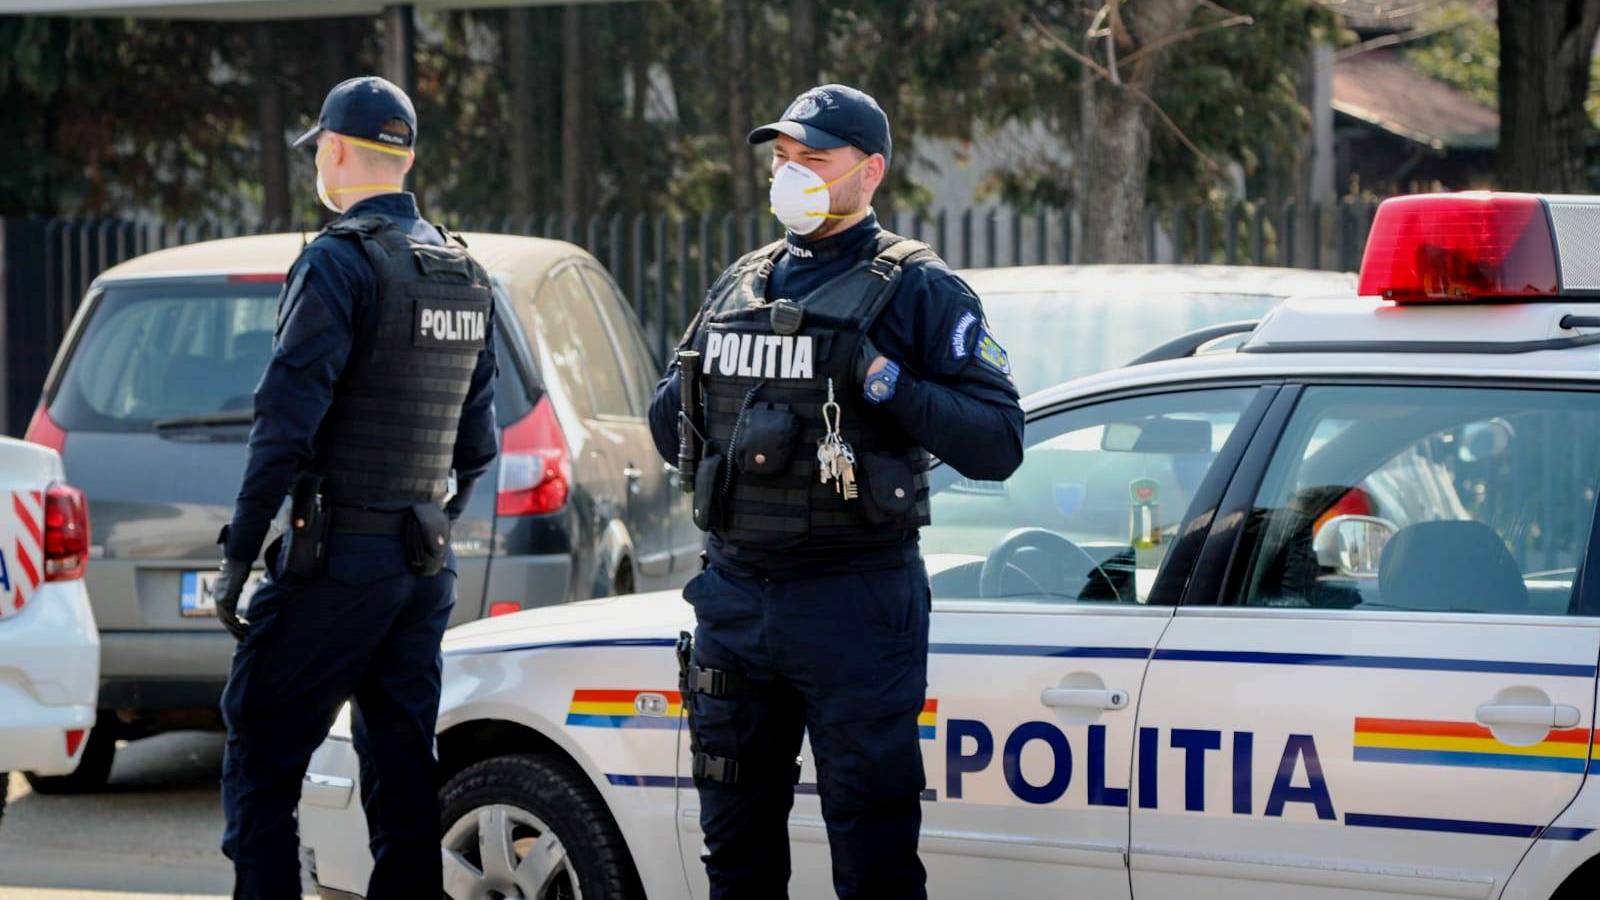 Det rumænske politi er aktivt med at indføre forebyggende foranstaltninger